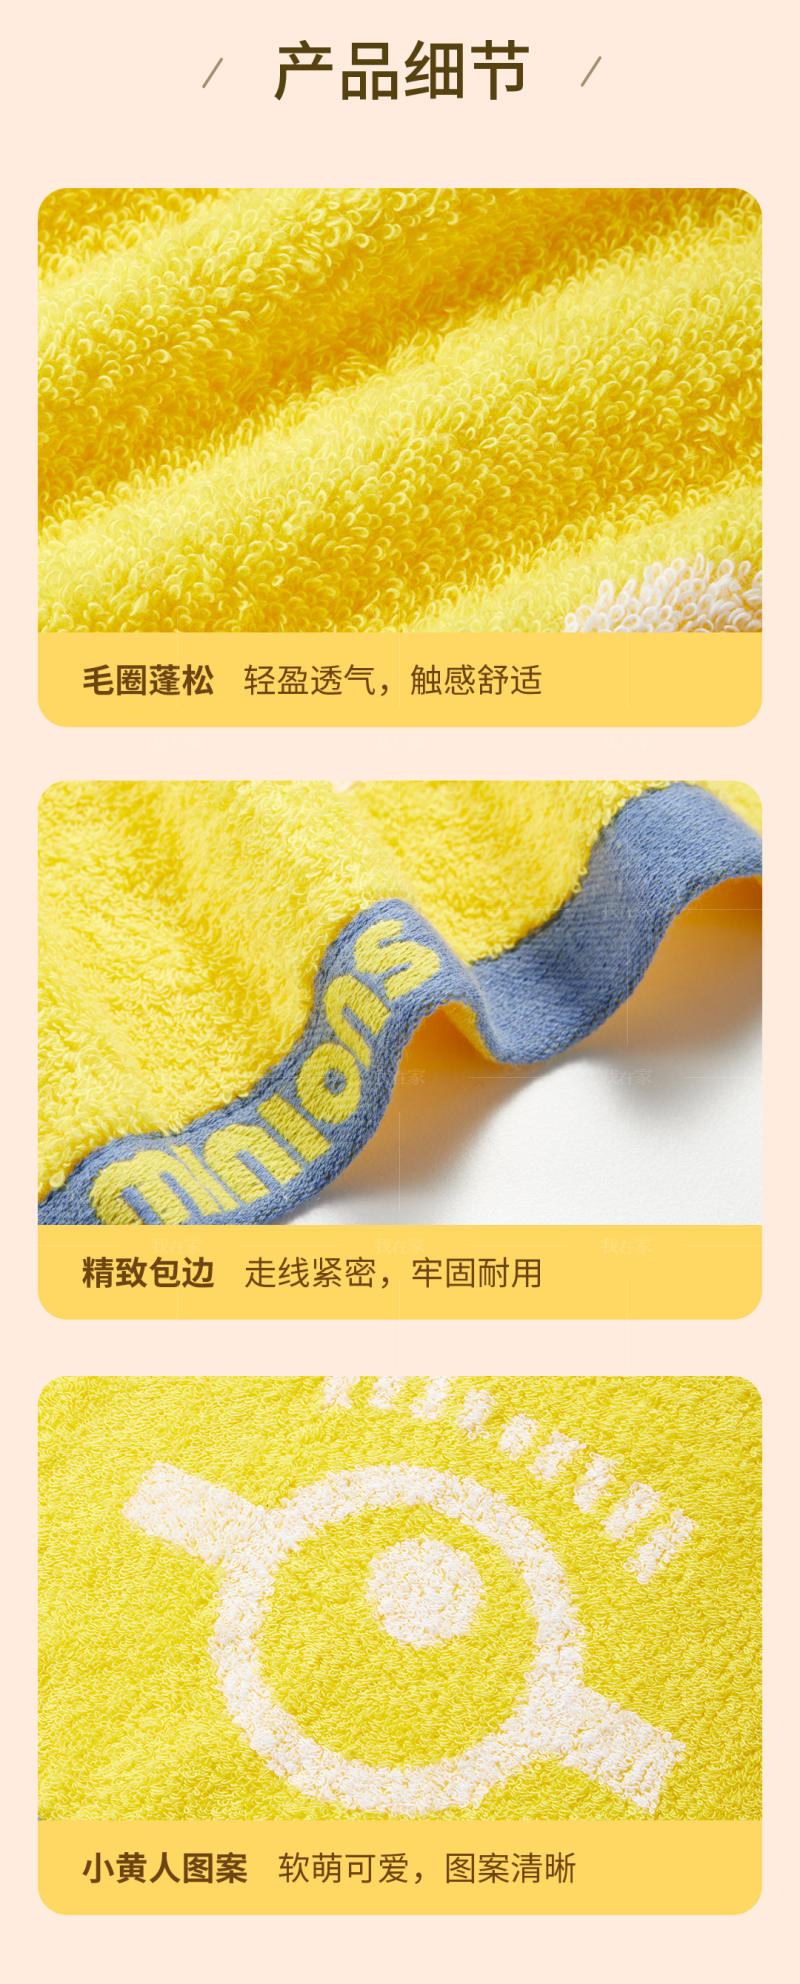 浅草物语系列神偷奶爸小黄人毛巾套装的详细介绍